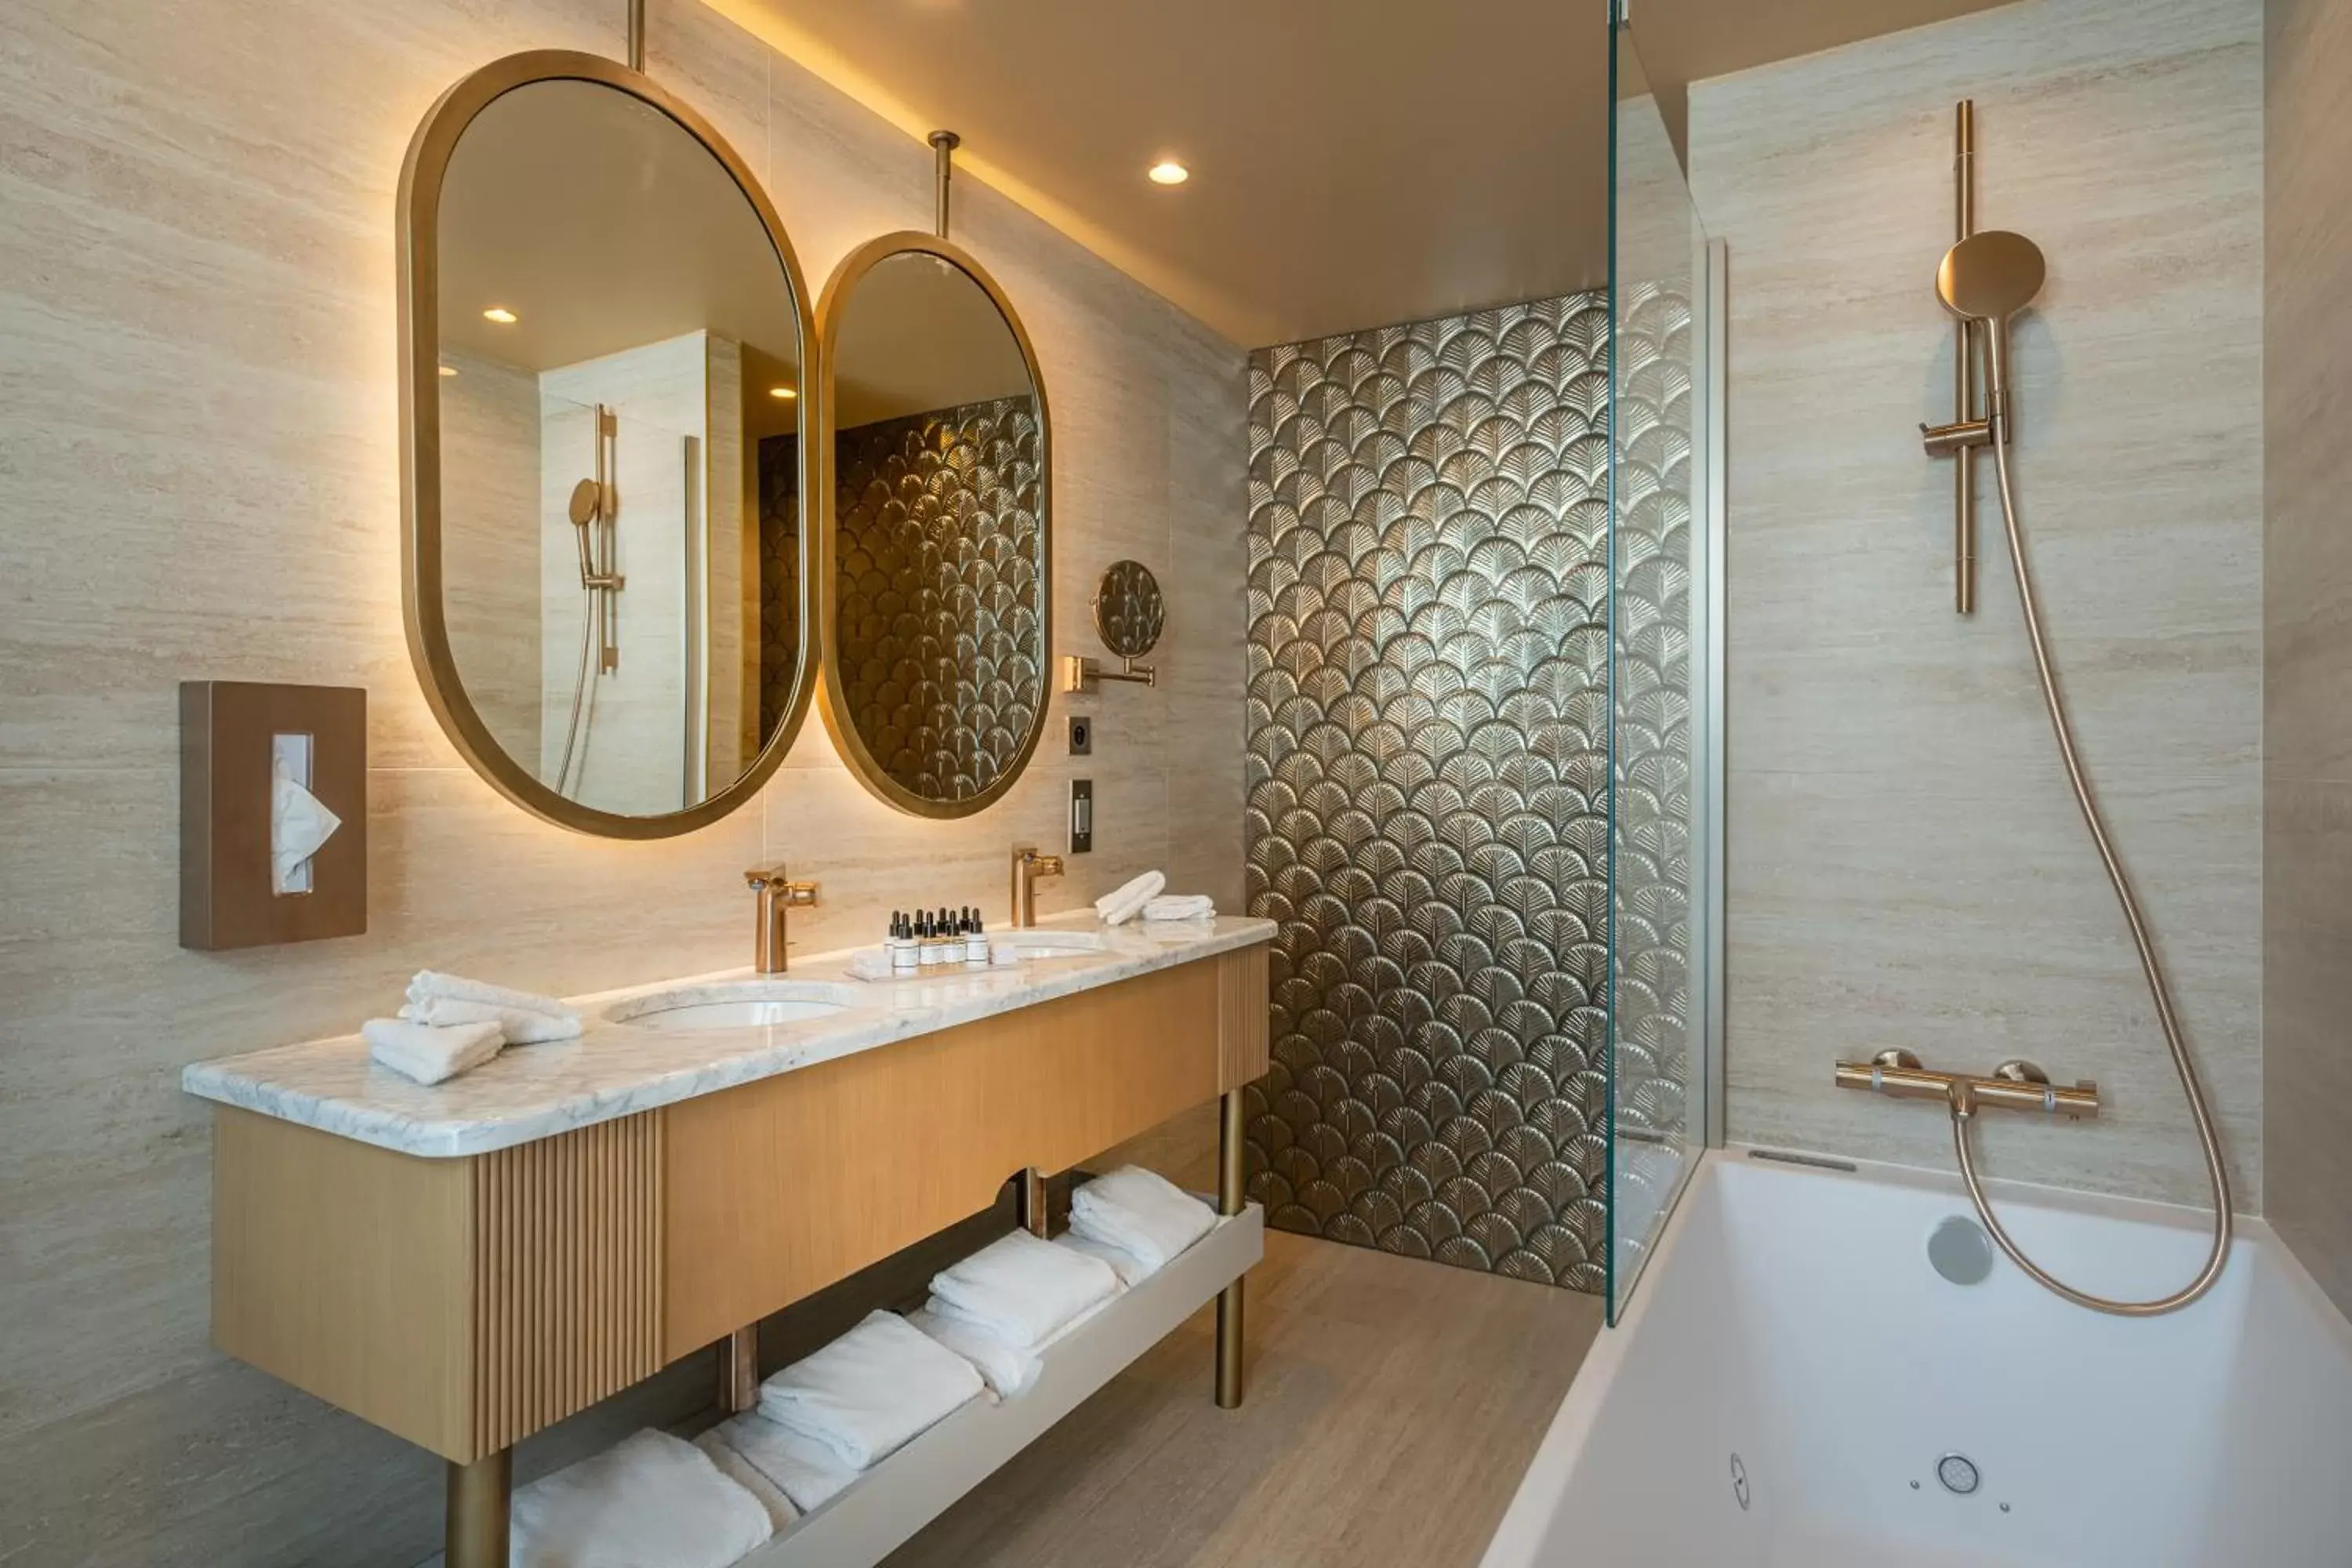 Bathroom in Hôtel Le Monna Lisa by Inwood Hotels